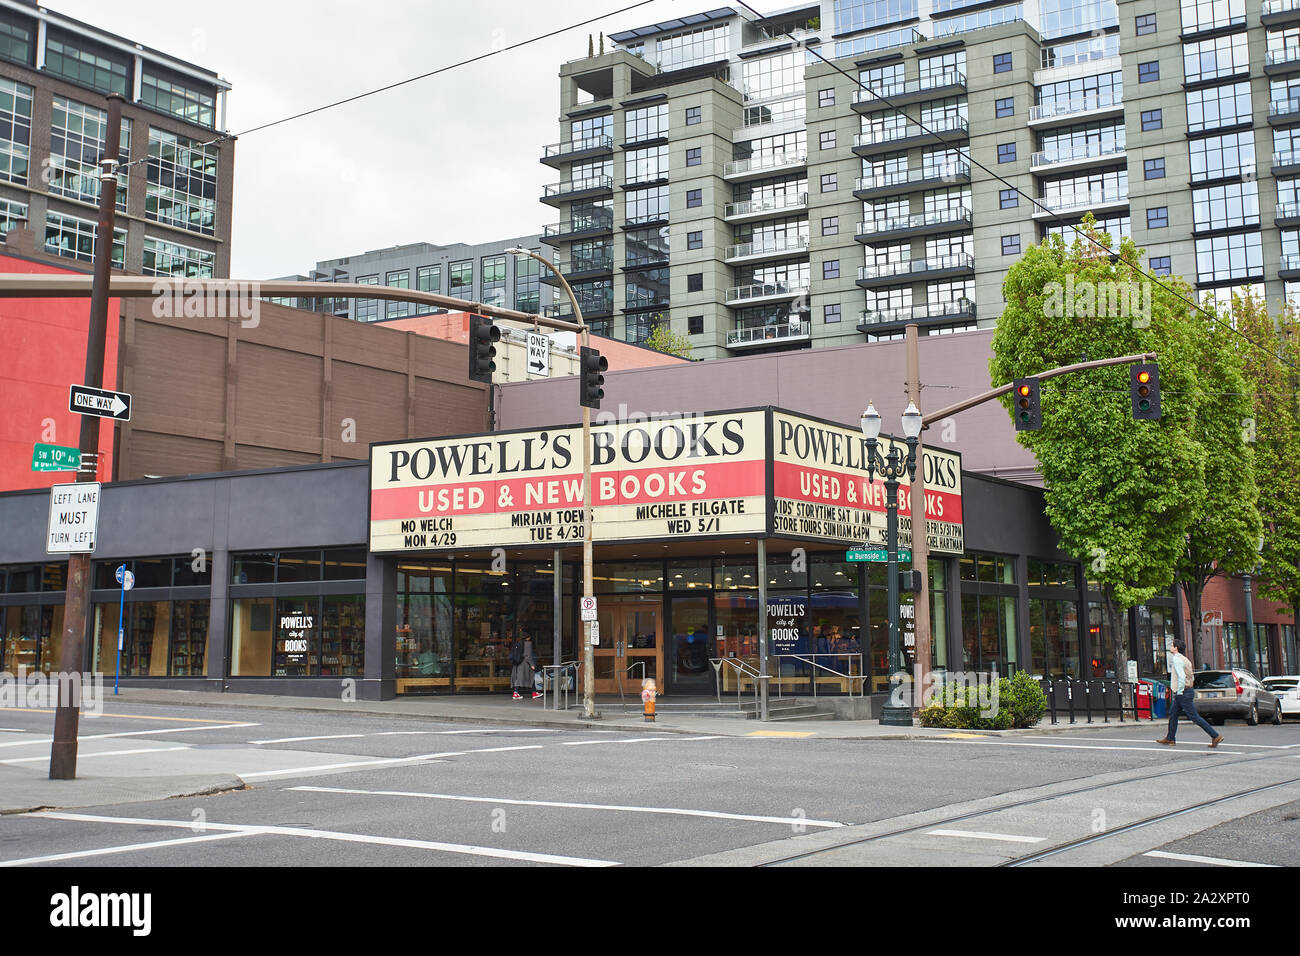 Powells Hauptsitz, genannt Powell's City of Books, im Stadtzentrum von Portland ODER. Sie behauptet, die größte unabhängige neue und gebrauchte Buchhandlung der Welt zu sein. Stockfoto